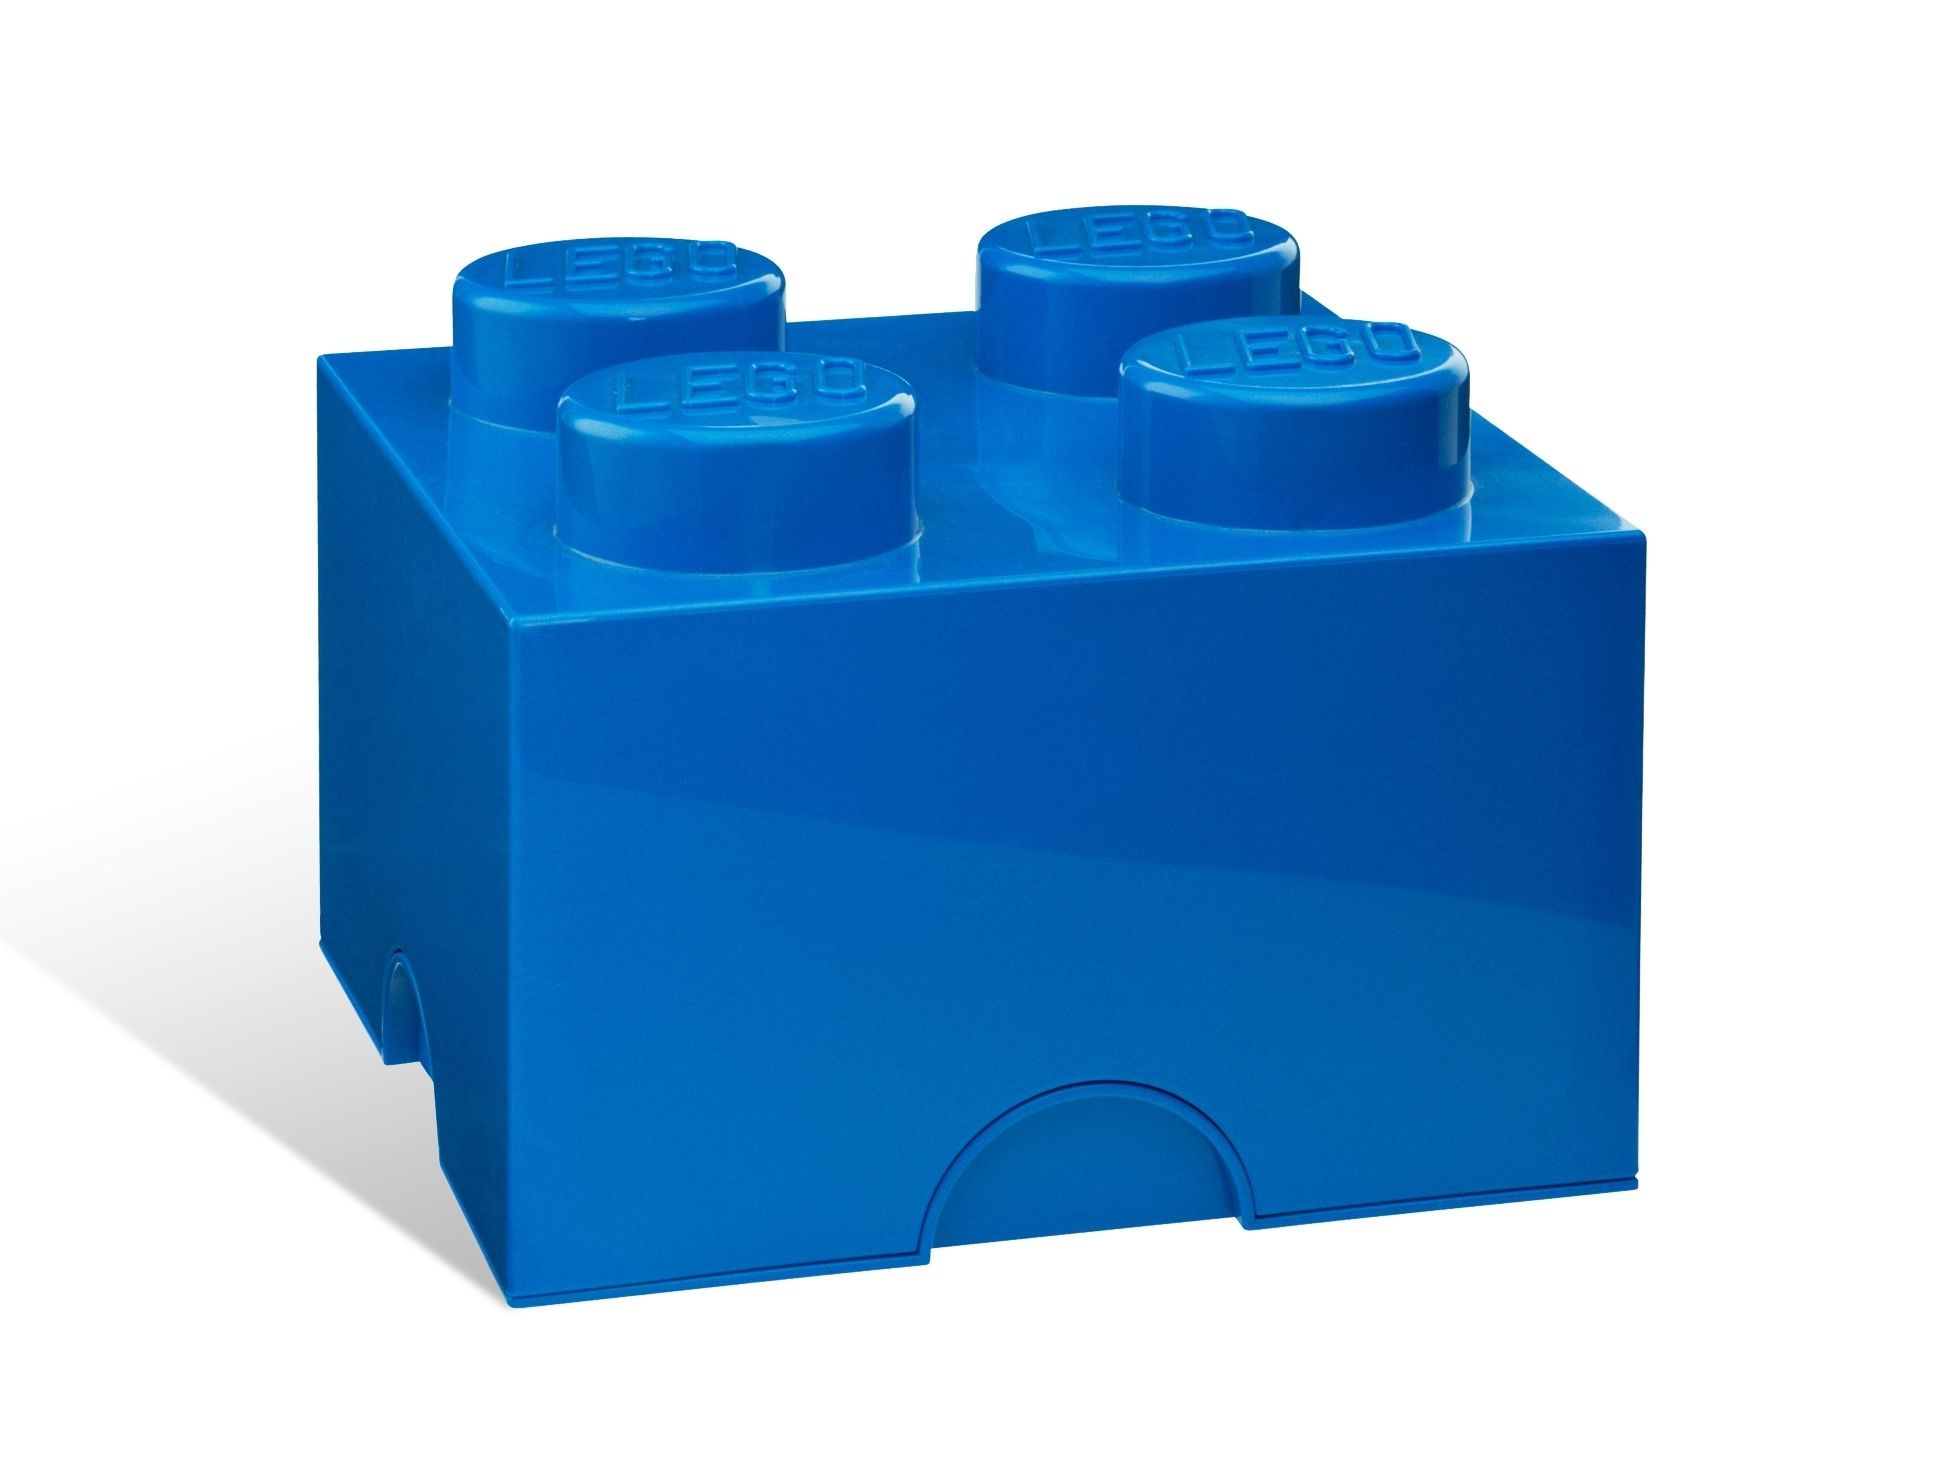 LEGO Gear 5006969 Aufbewahrungsstein mit 4 Noppen in Blau LEGO_5001383.jpg